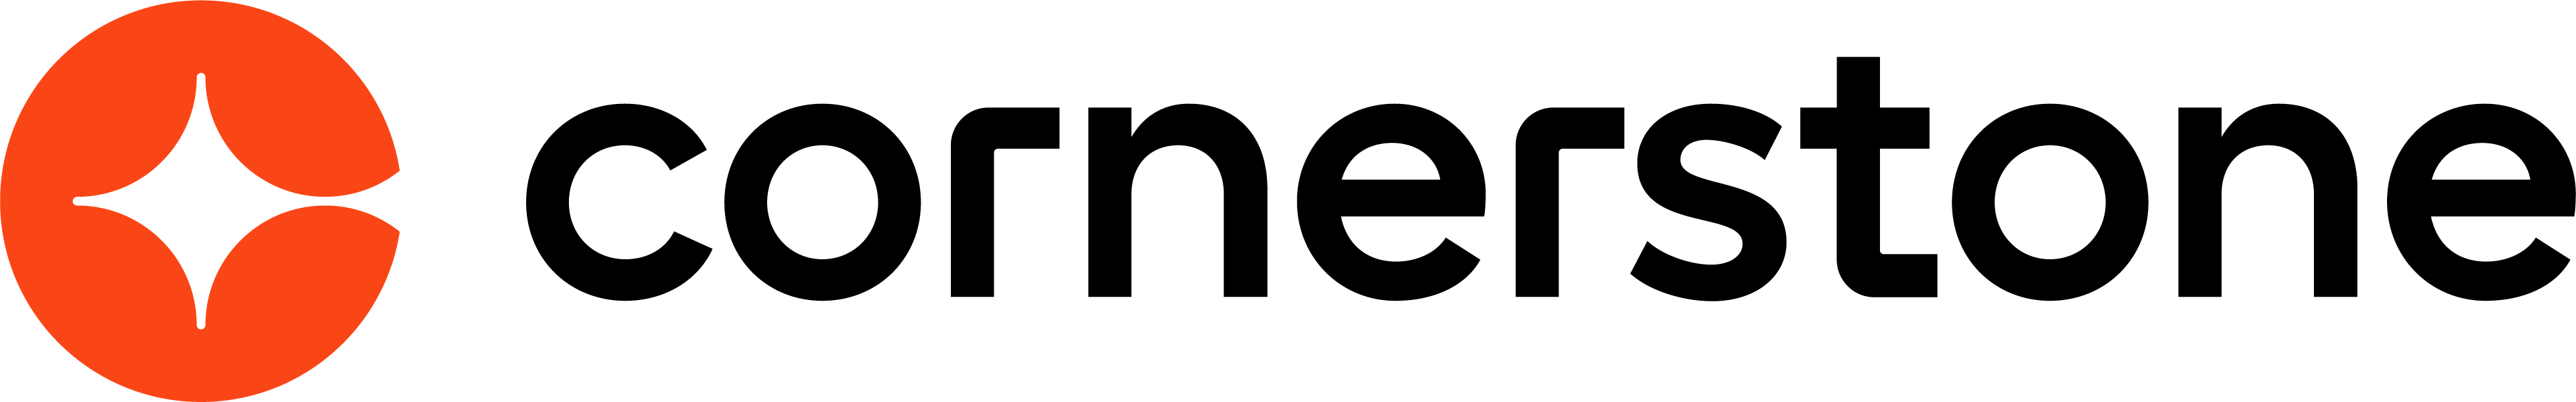 NEW-CSOD-logo-HRZ-RGB (002)